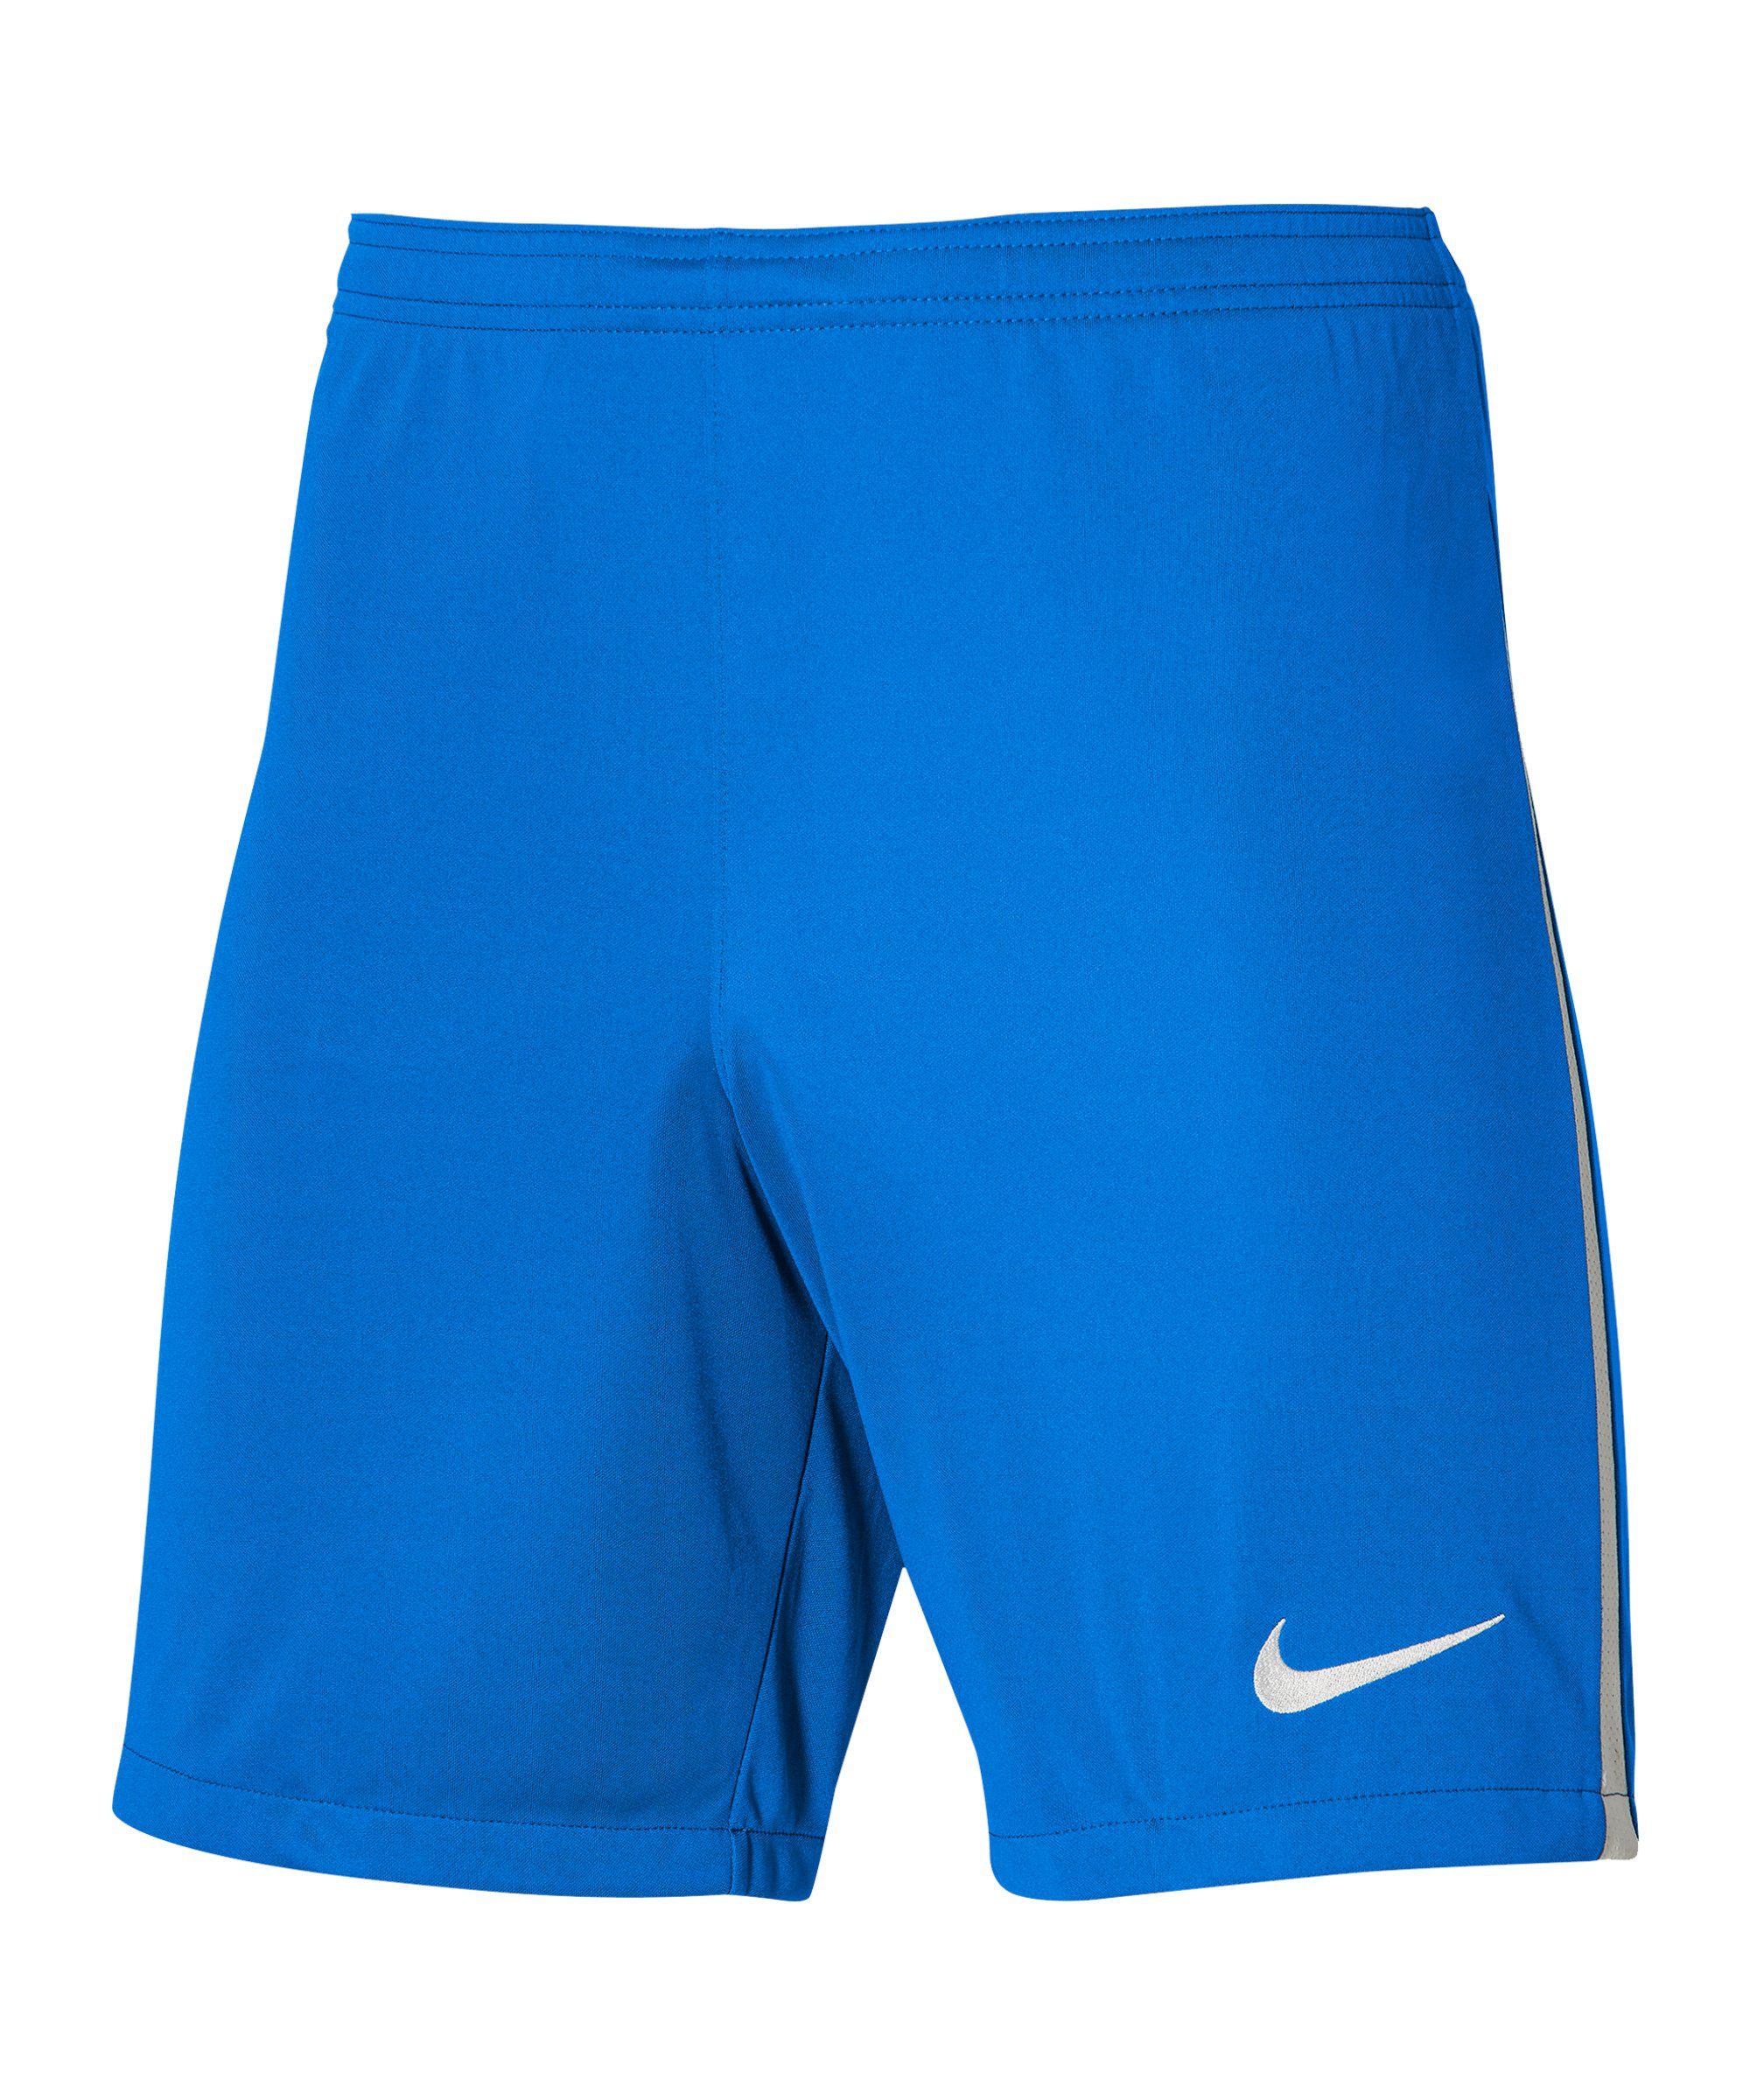 Kids Sporthose Nike League Short III dunkelblauweissweiss